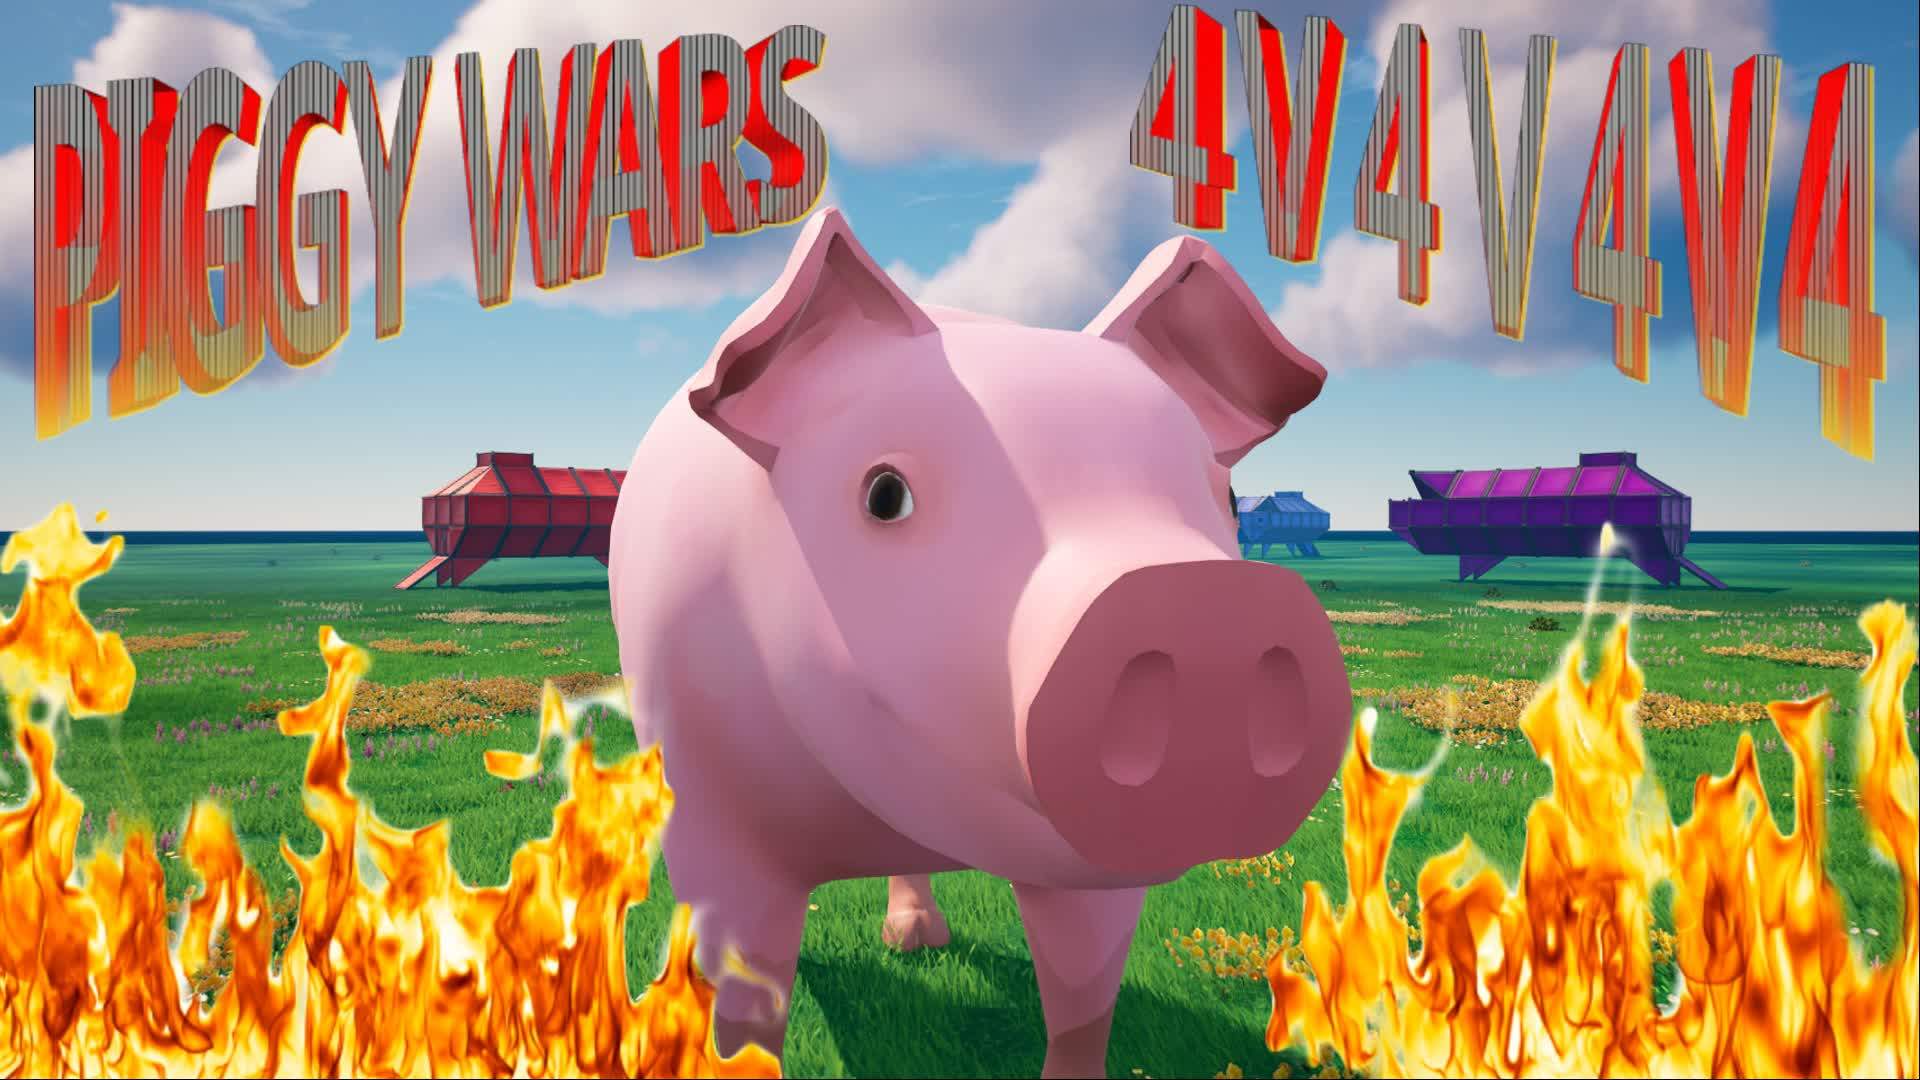 PIGGY WARS (4V4V4V4)